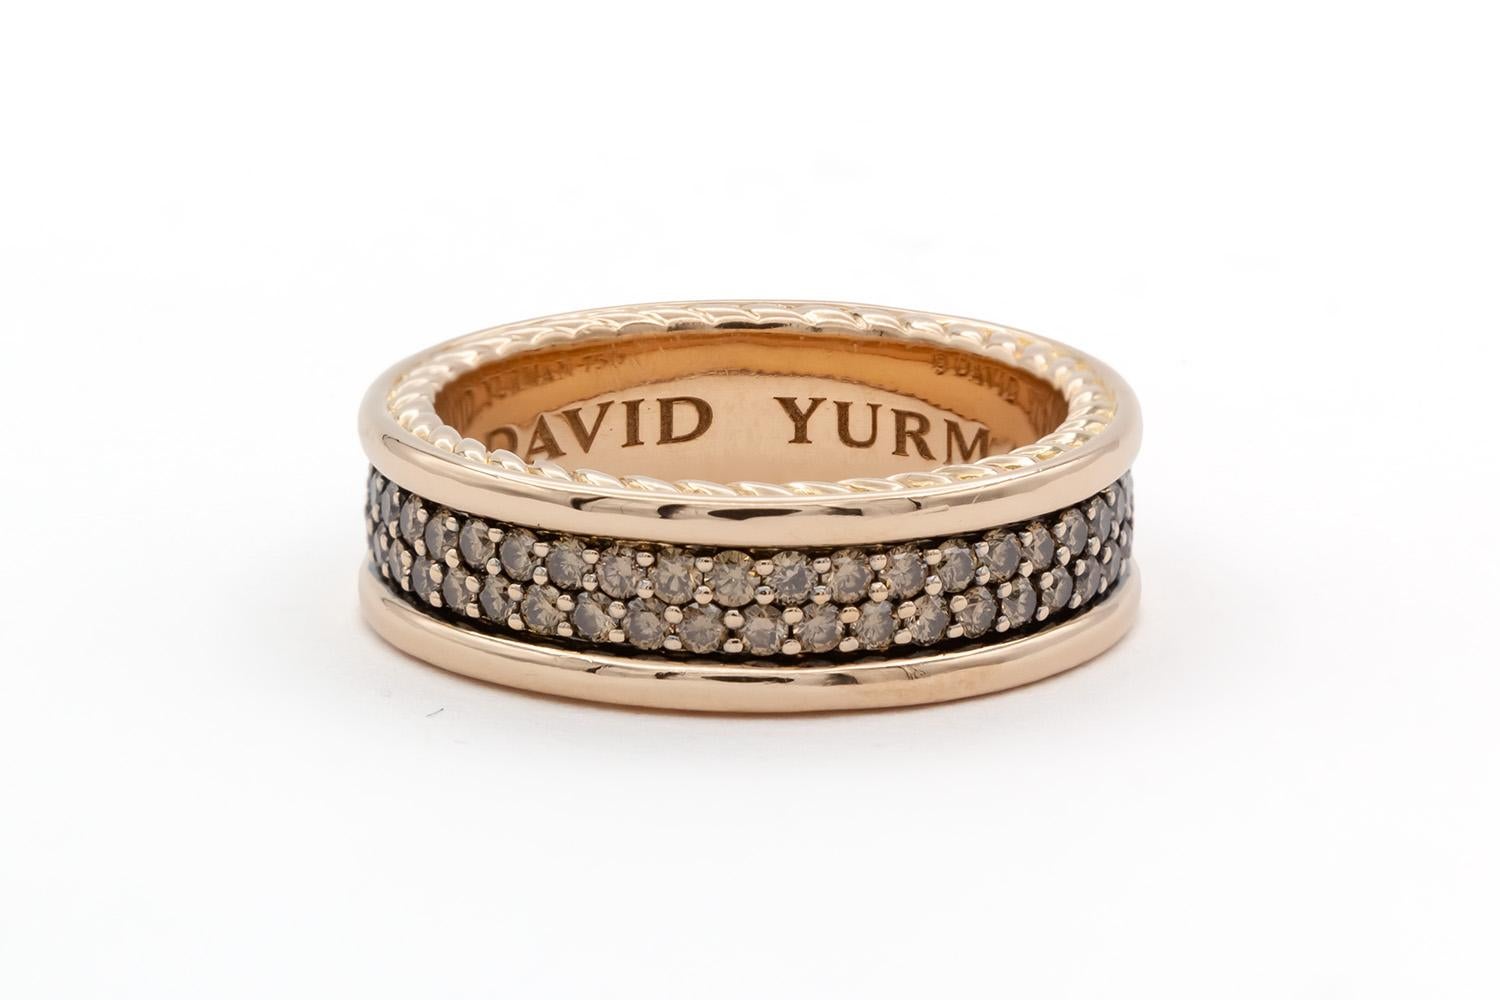 Nous avons le plaisir de vous proposer cette bague David Yurman Streamline 2 Row Mens Band Ring. Présentant le design classique de David Yurman, cette bague est façonnée en or rose 18 carats et sertie de diamants cognac ronds de taille brillant de